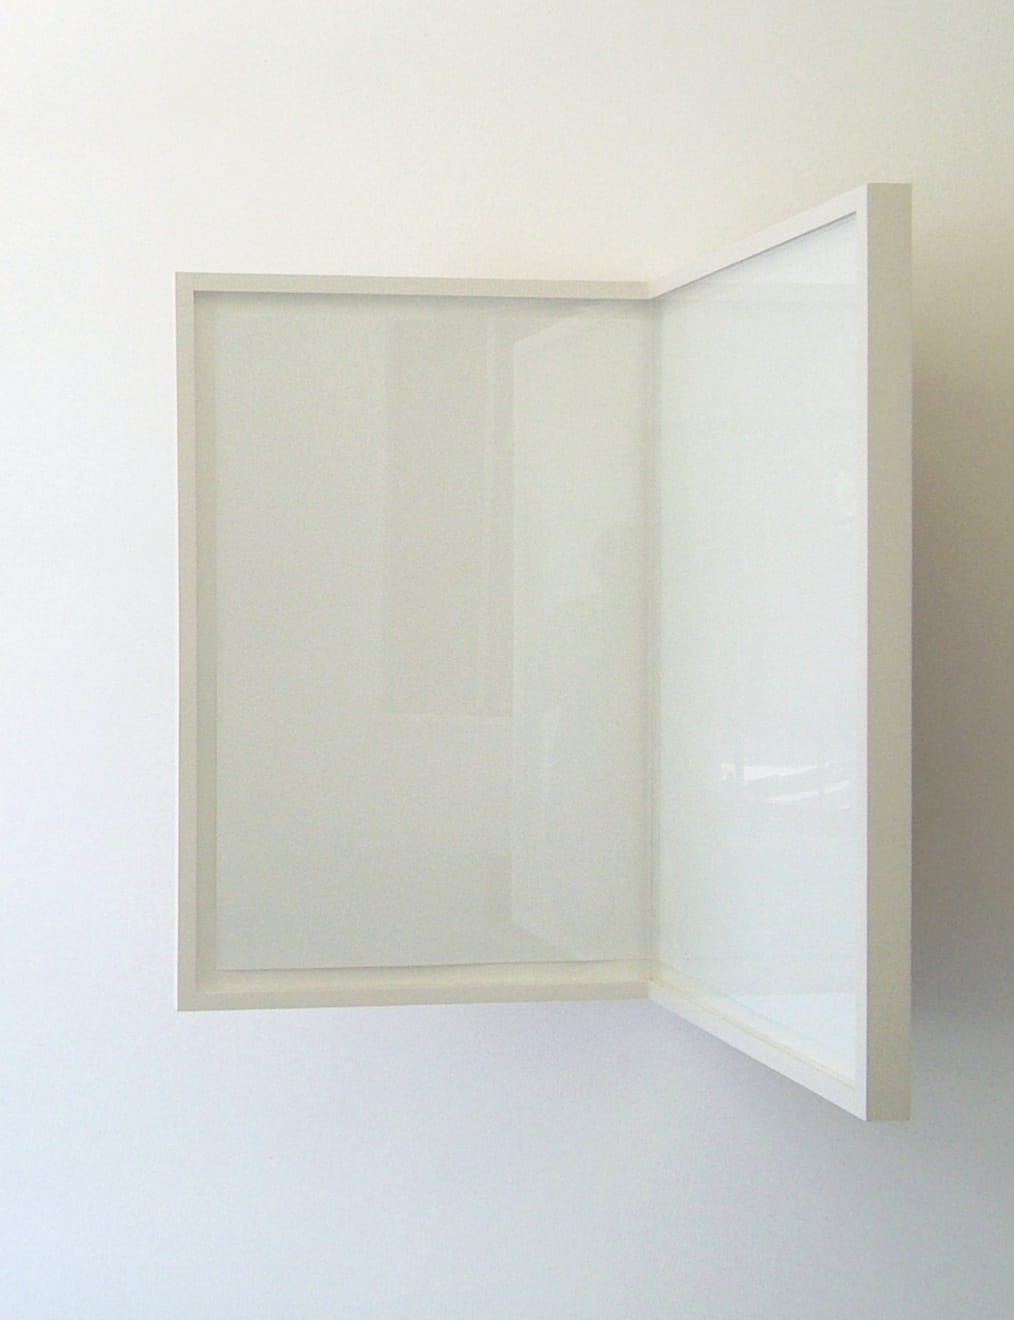 Richard Rigg, Sheet of Paper / Folded / Framed, 2008